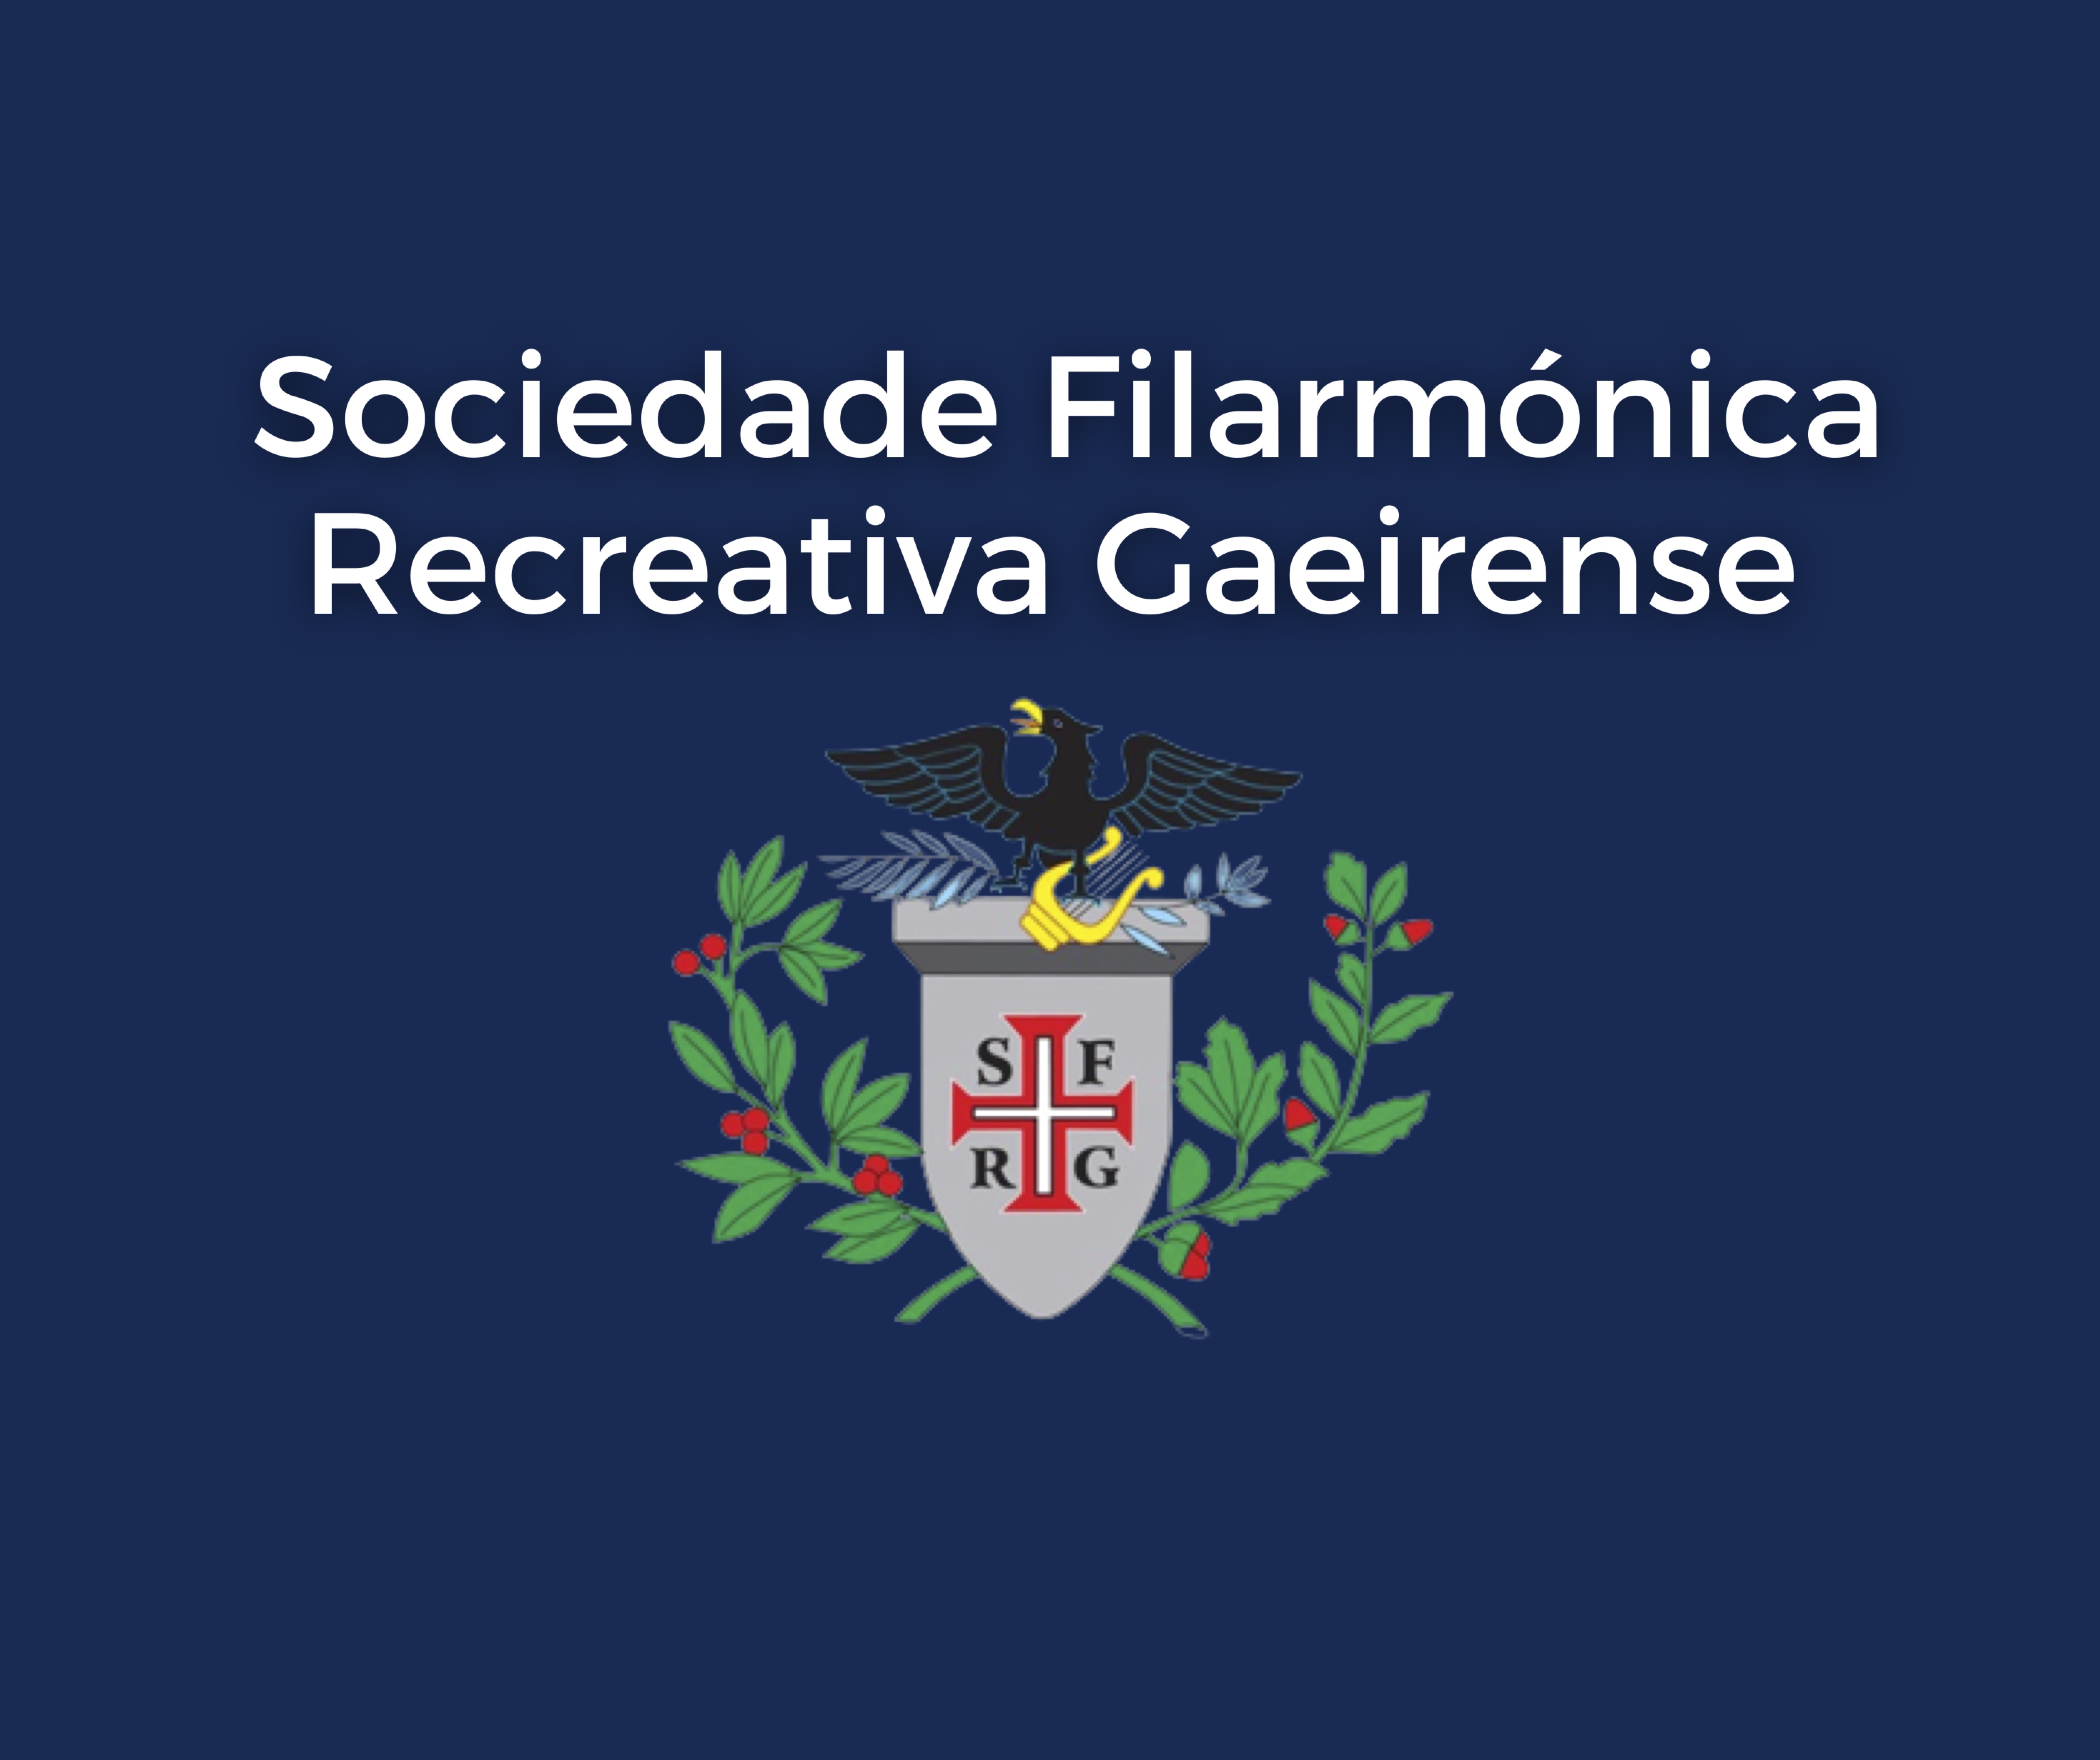 Sociedade Filarmónica e Recreativa Gaeirense 